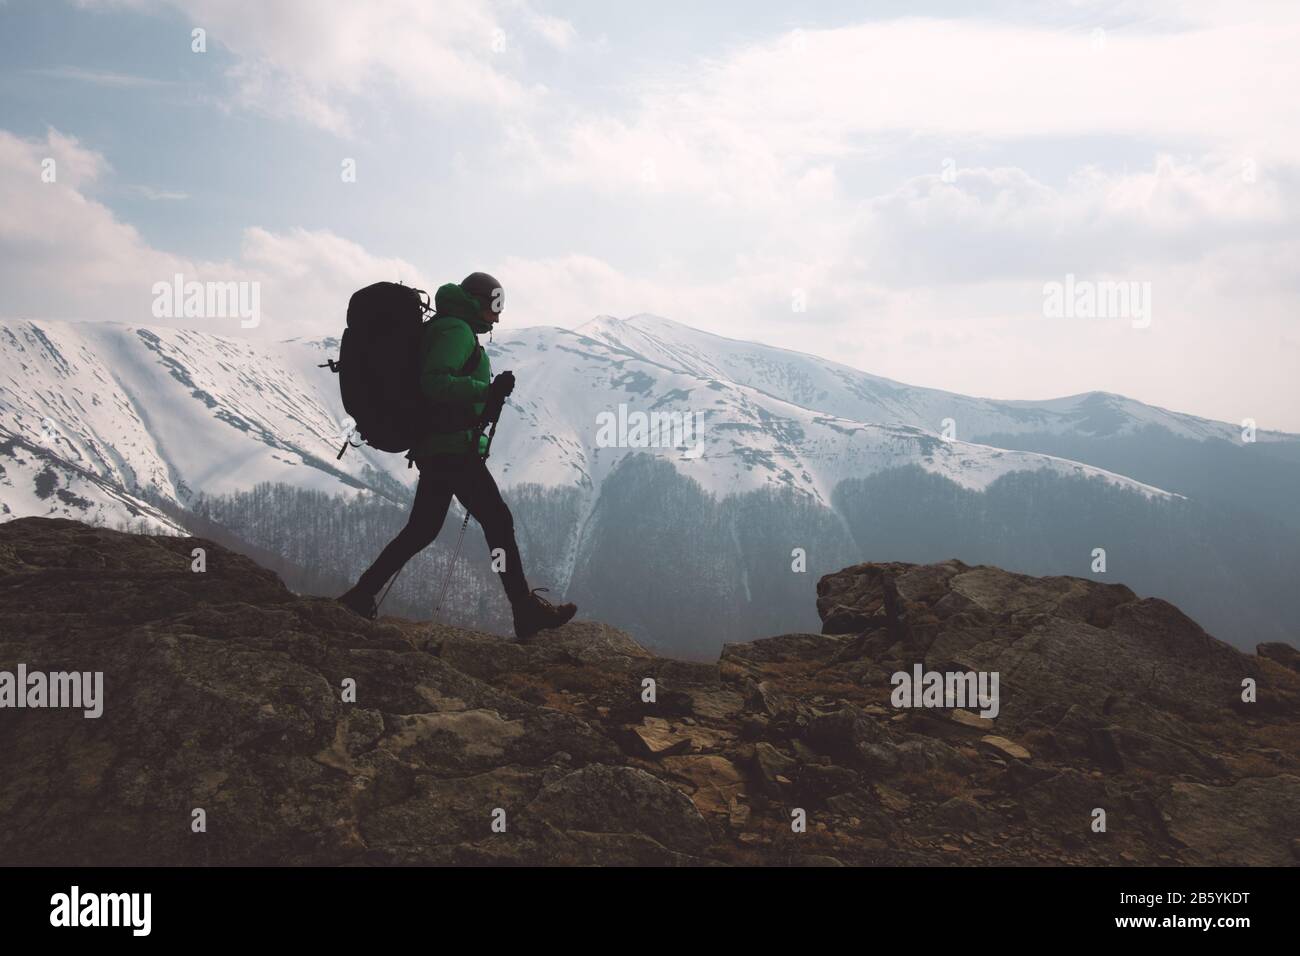 Un paesaggio fantastico con montagne innevate e gamma escursionista con zaino su un primo piano Foto Stock